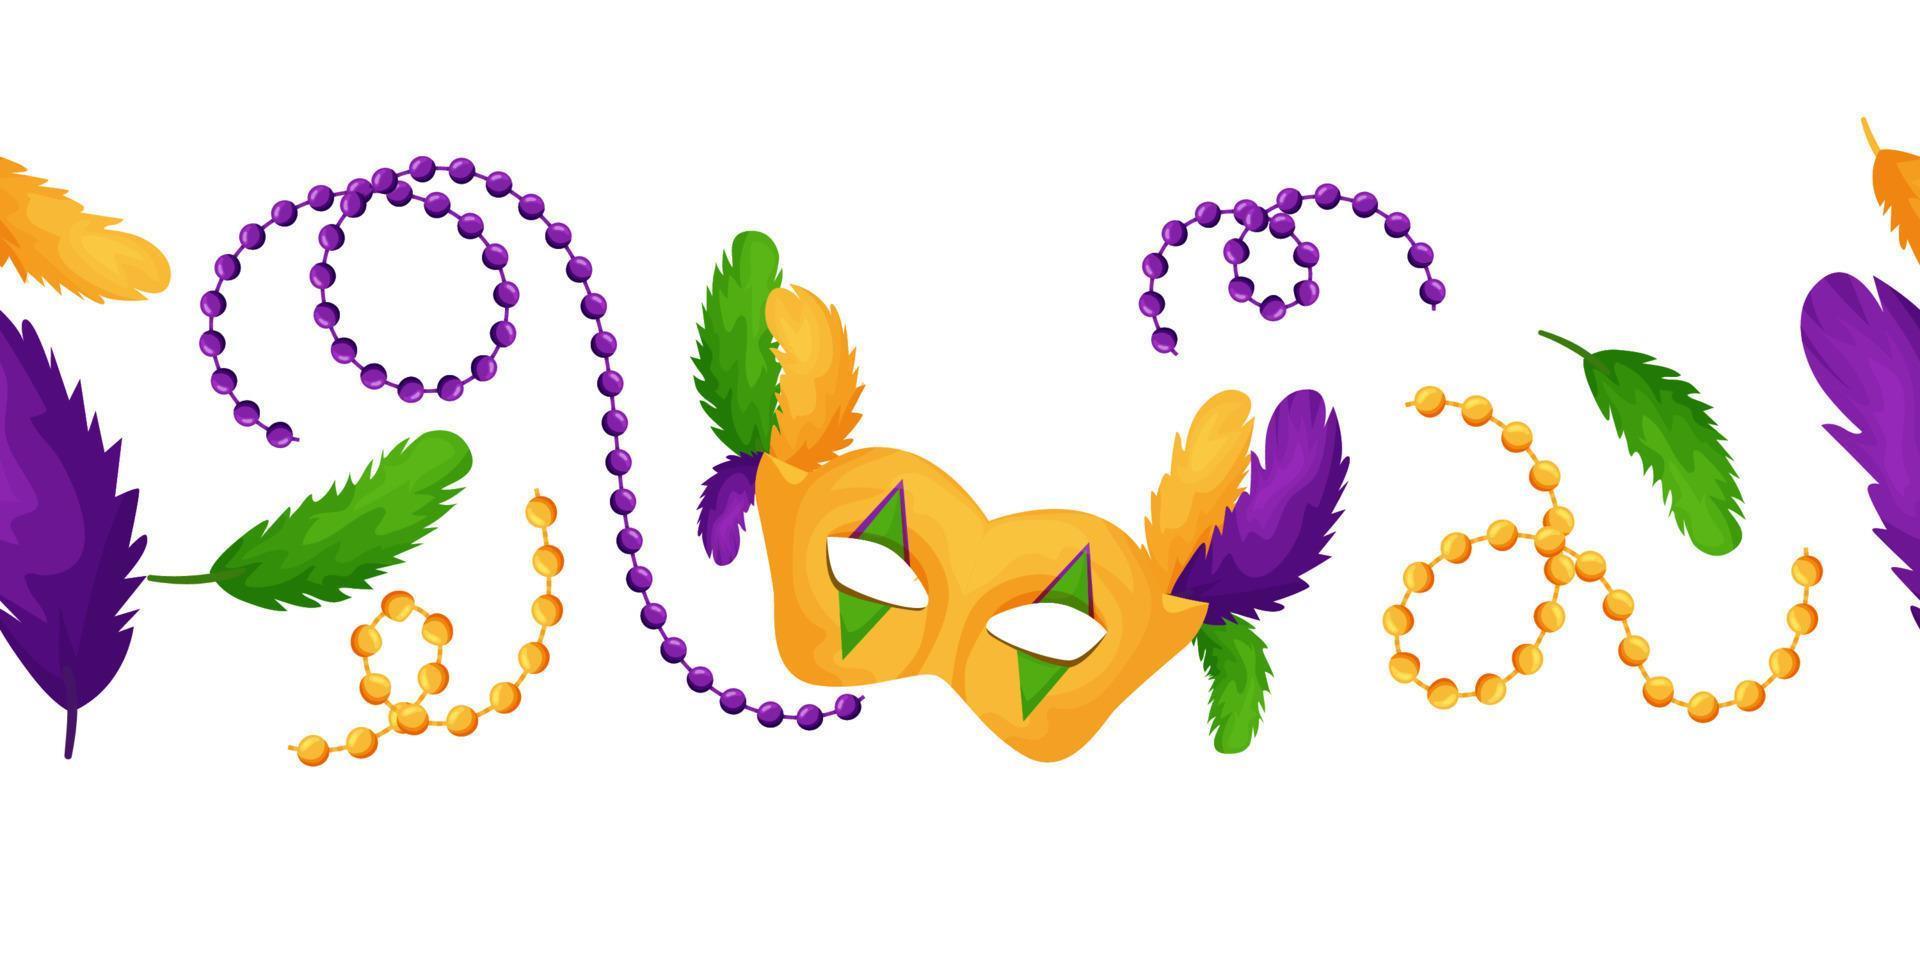 mardi gras. grens, ornament met kralen, carnaval masker en veren, voor verpakking, afdrukken. vector illustratie